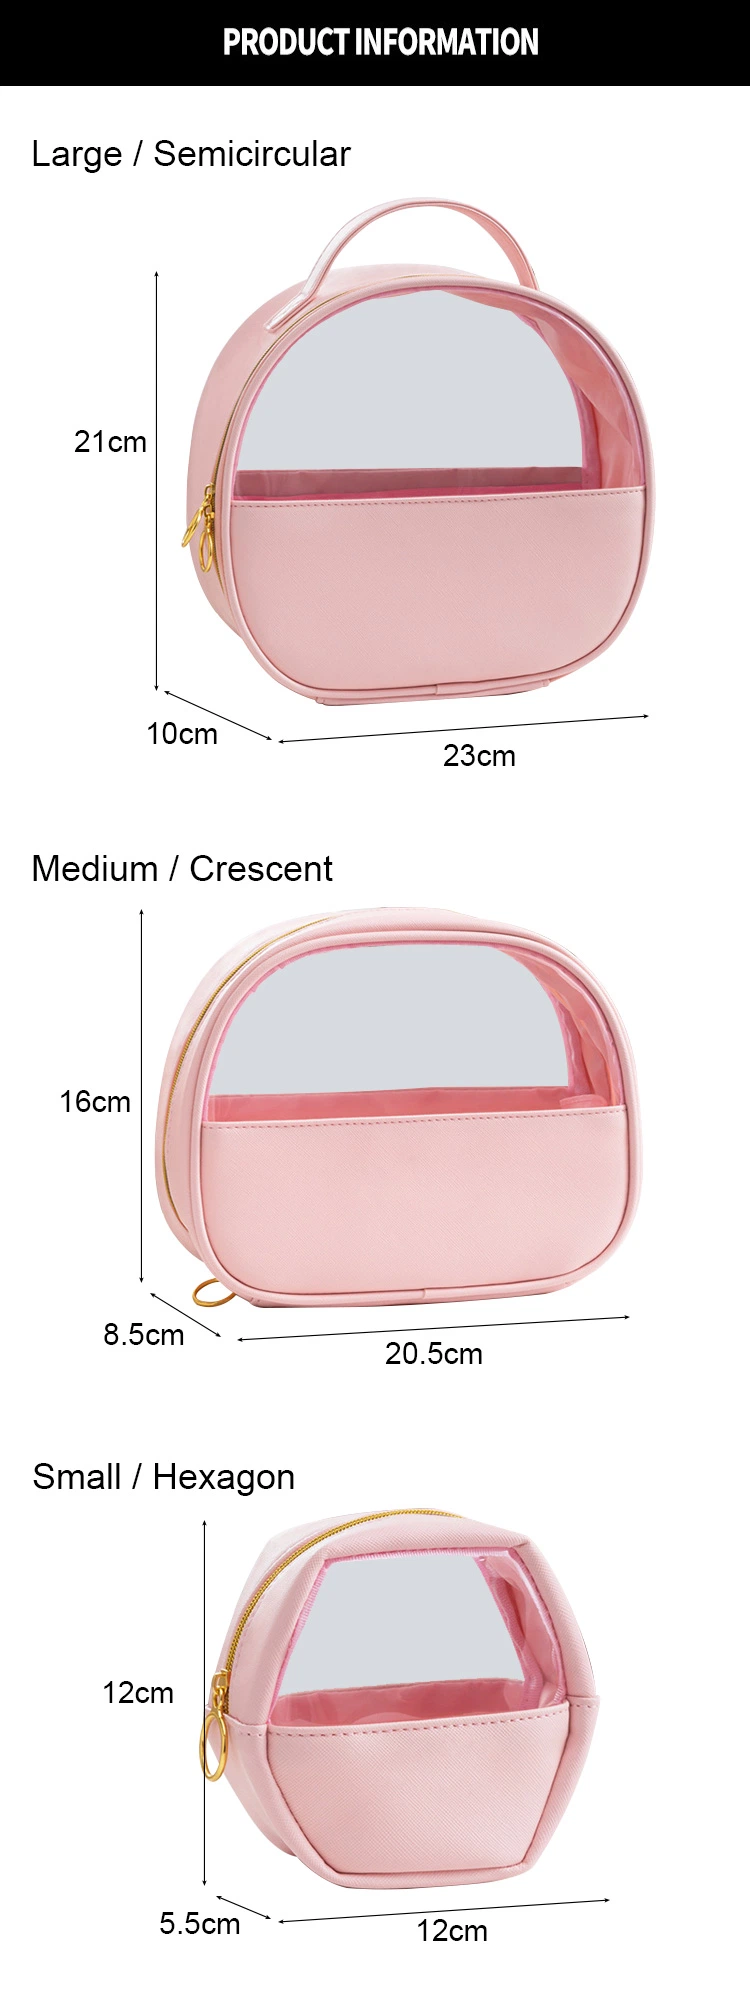 Large Capacity PVC Travel Cosmetic Bag Transparent Semi-Circular Hand Wash Bag